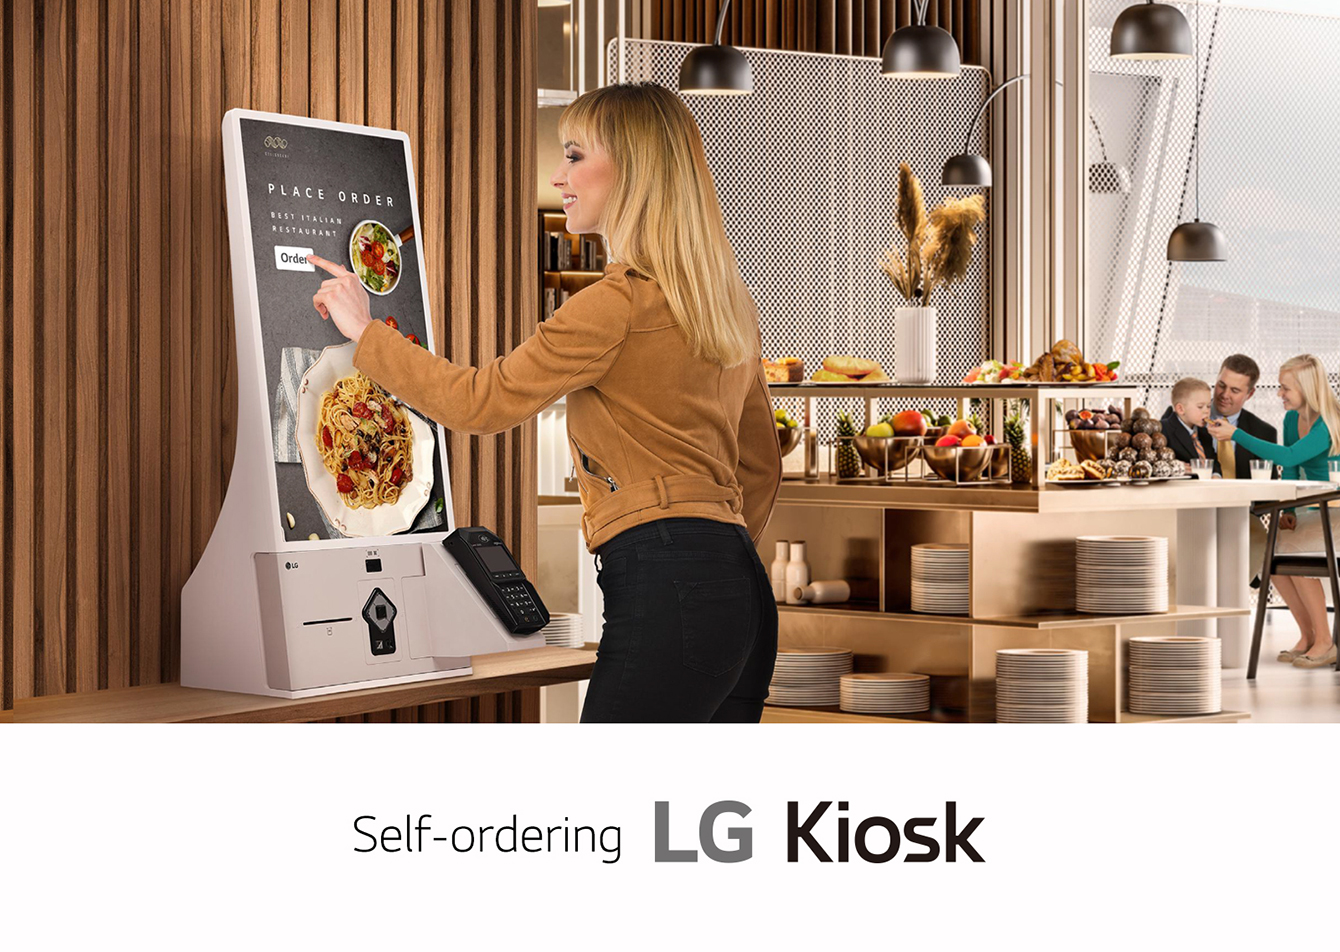 LG Self-ordering Kiosk